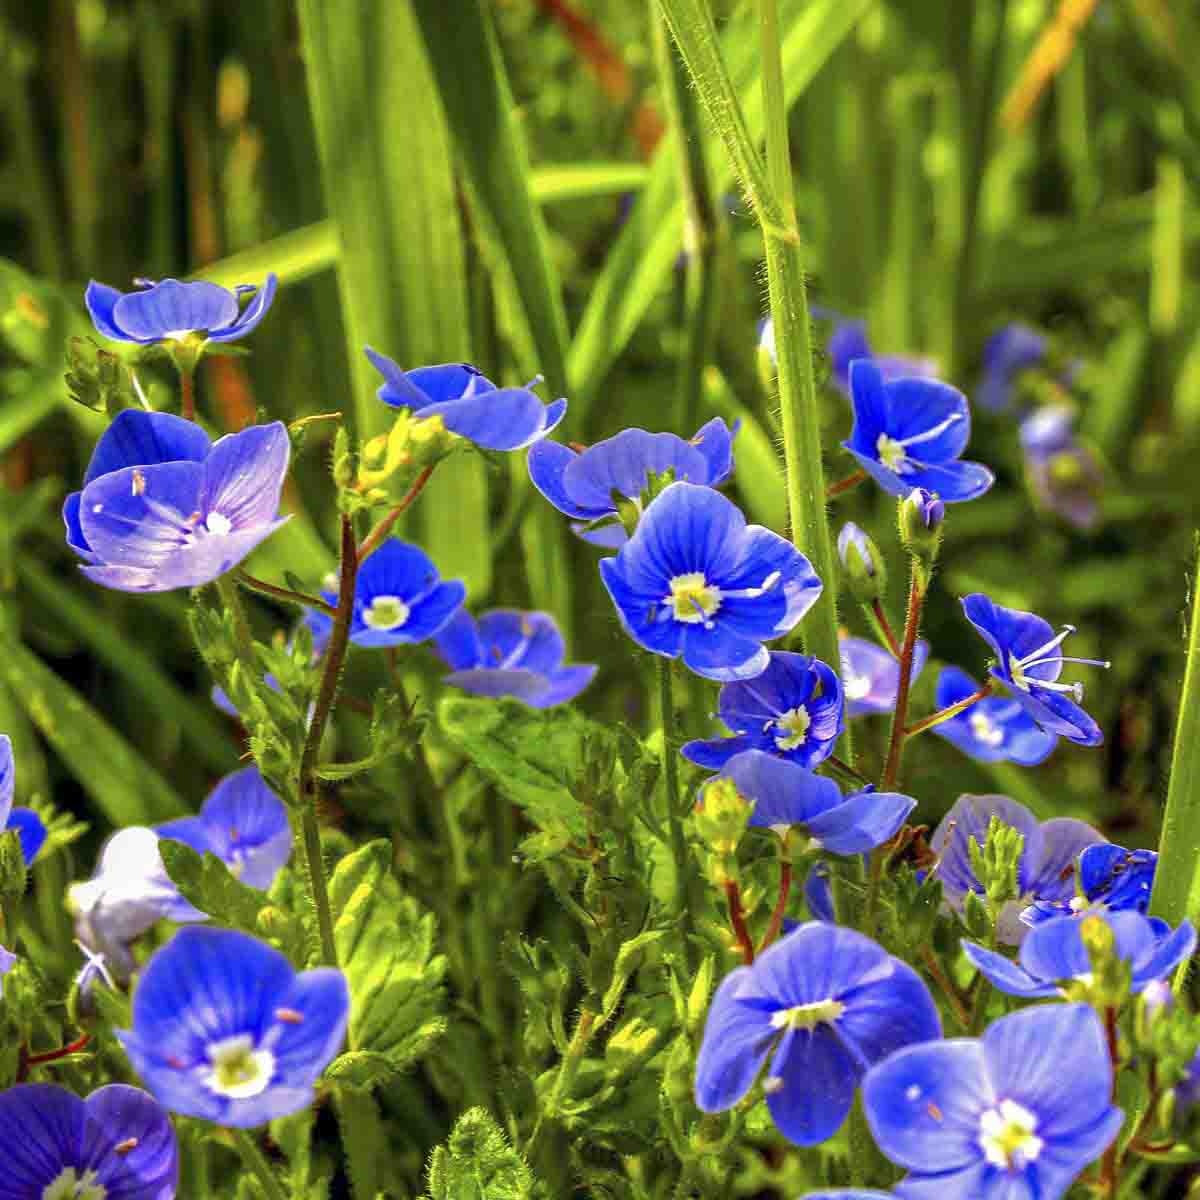 bright blue germander flowers growing in meadow.